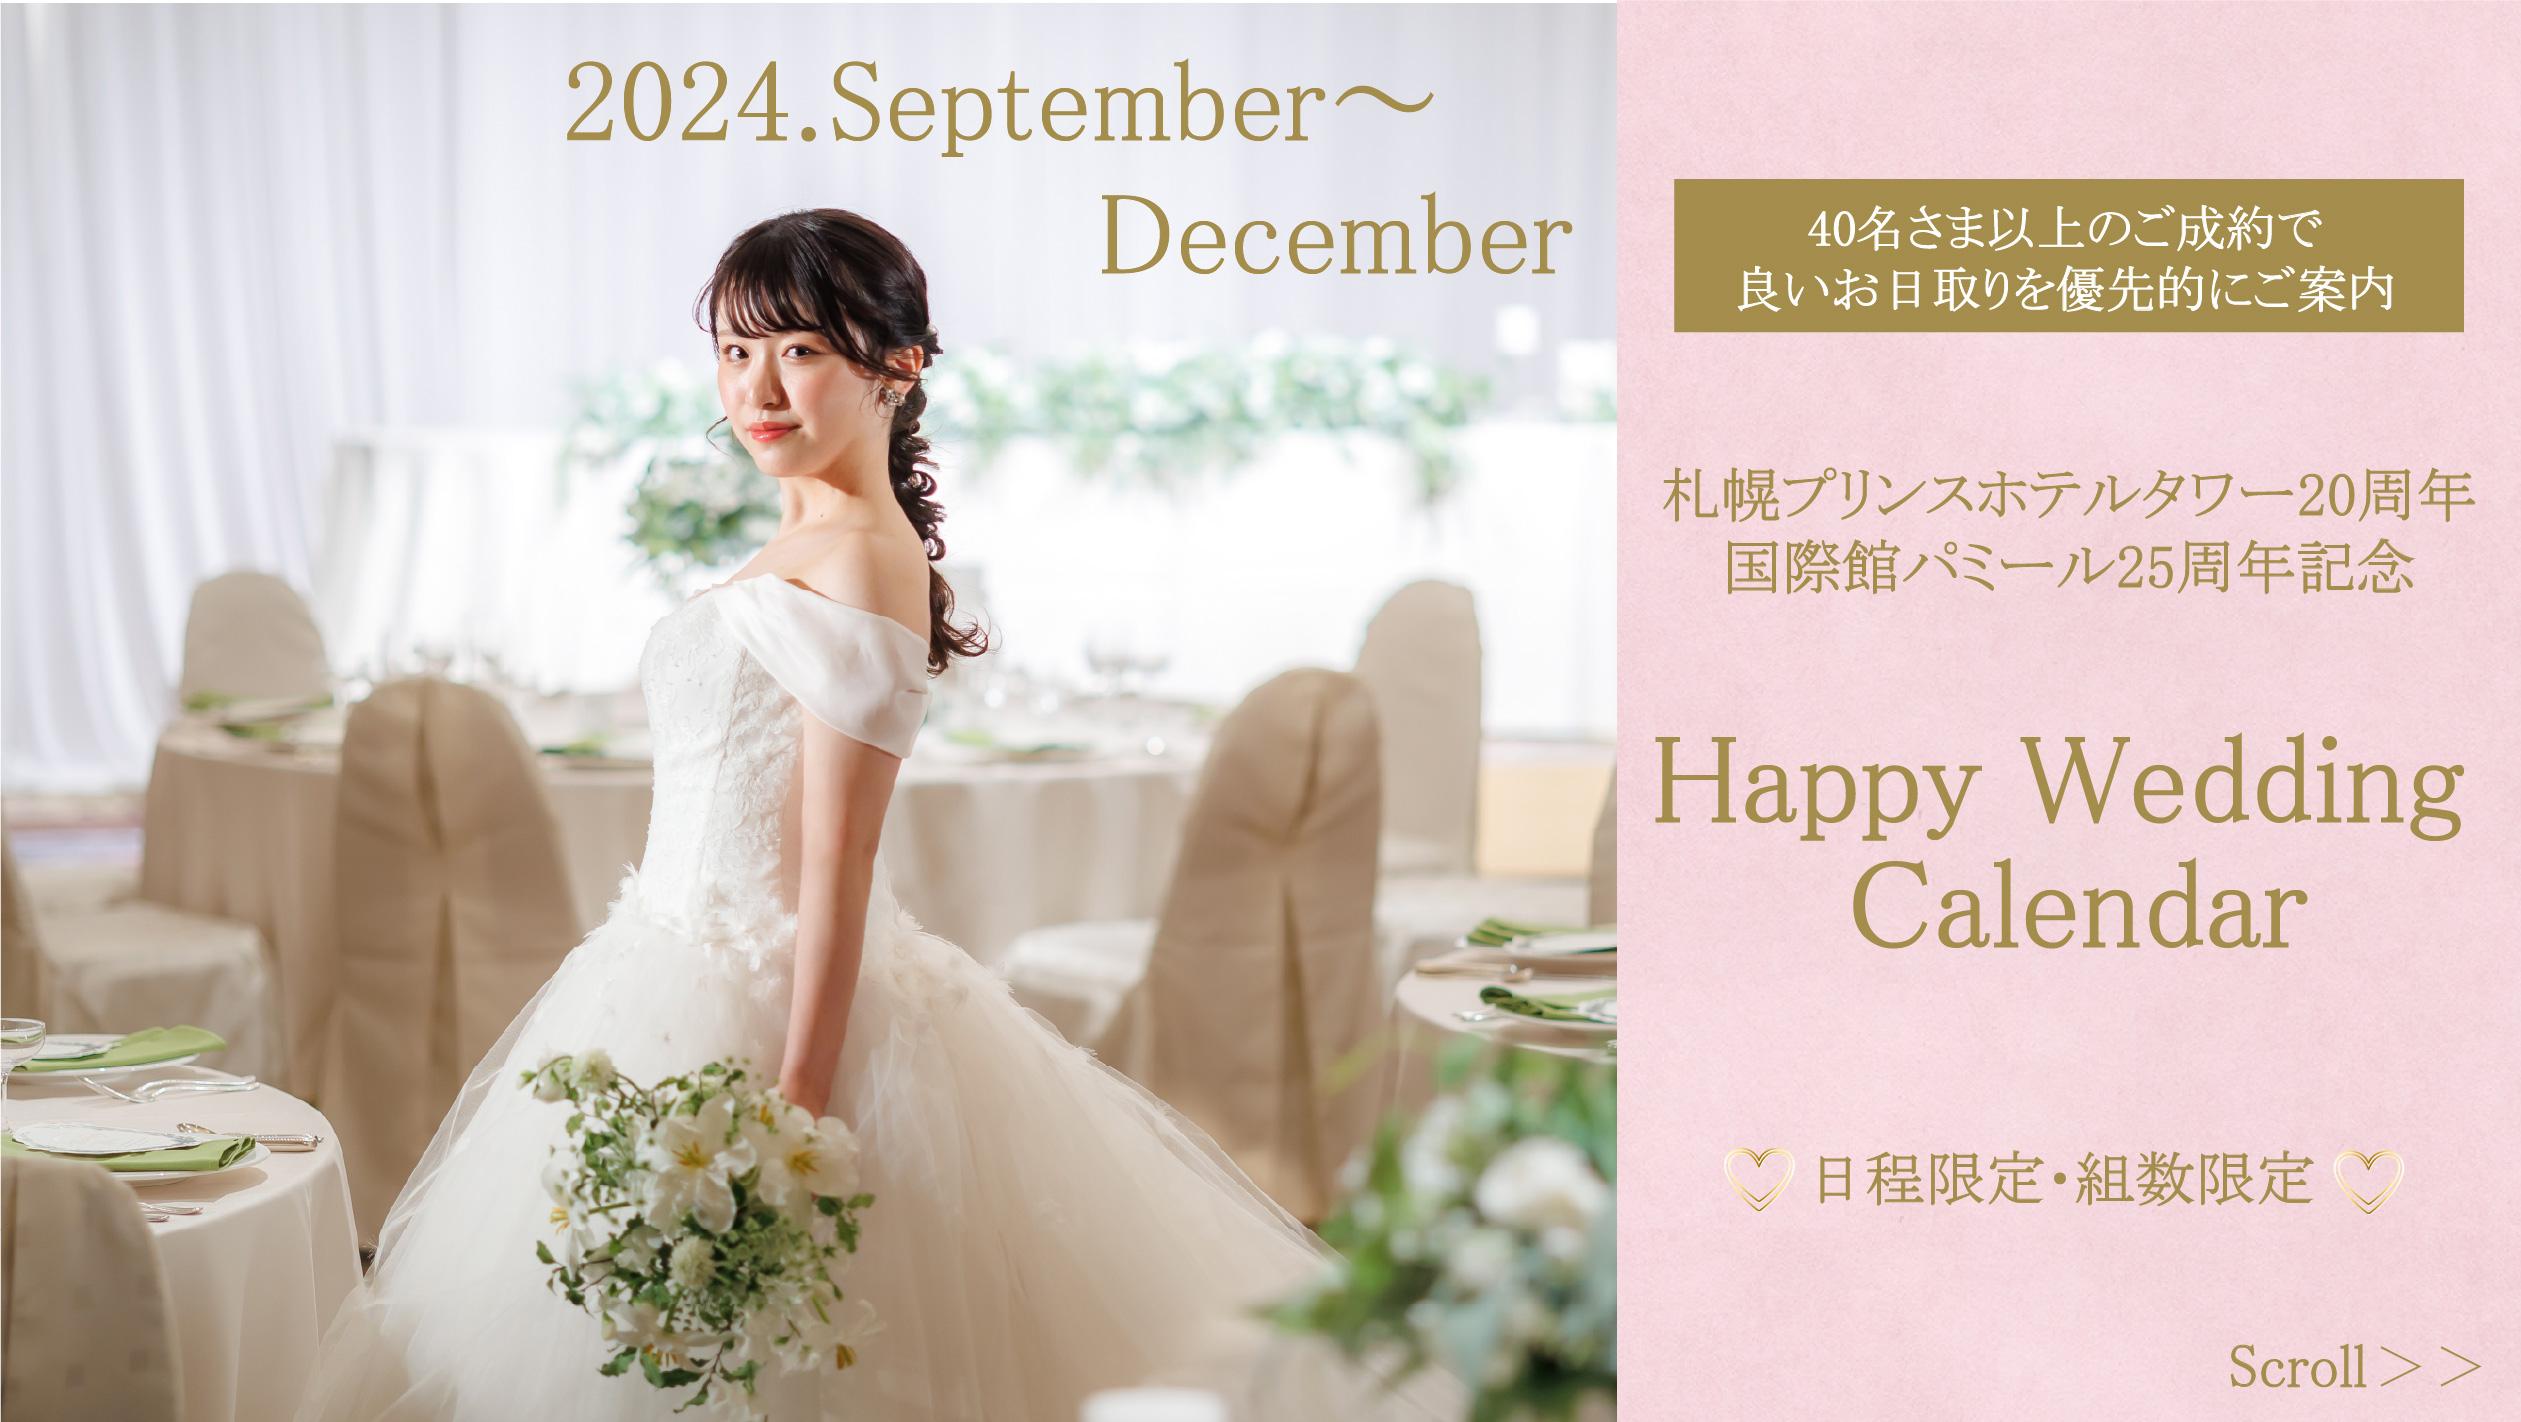 【札幌プリンスホテルタワー20周年 国際館パミール25周年記念】Happy Wedding  Calendar